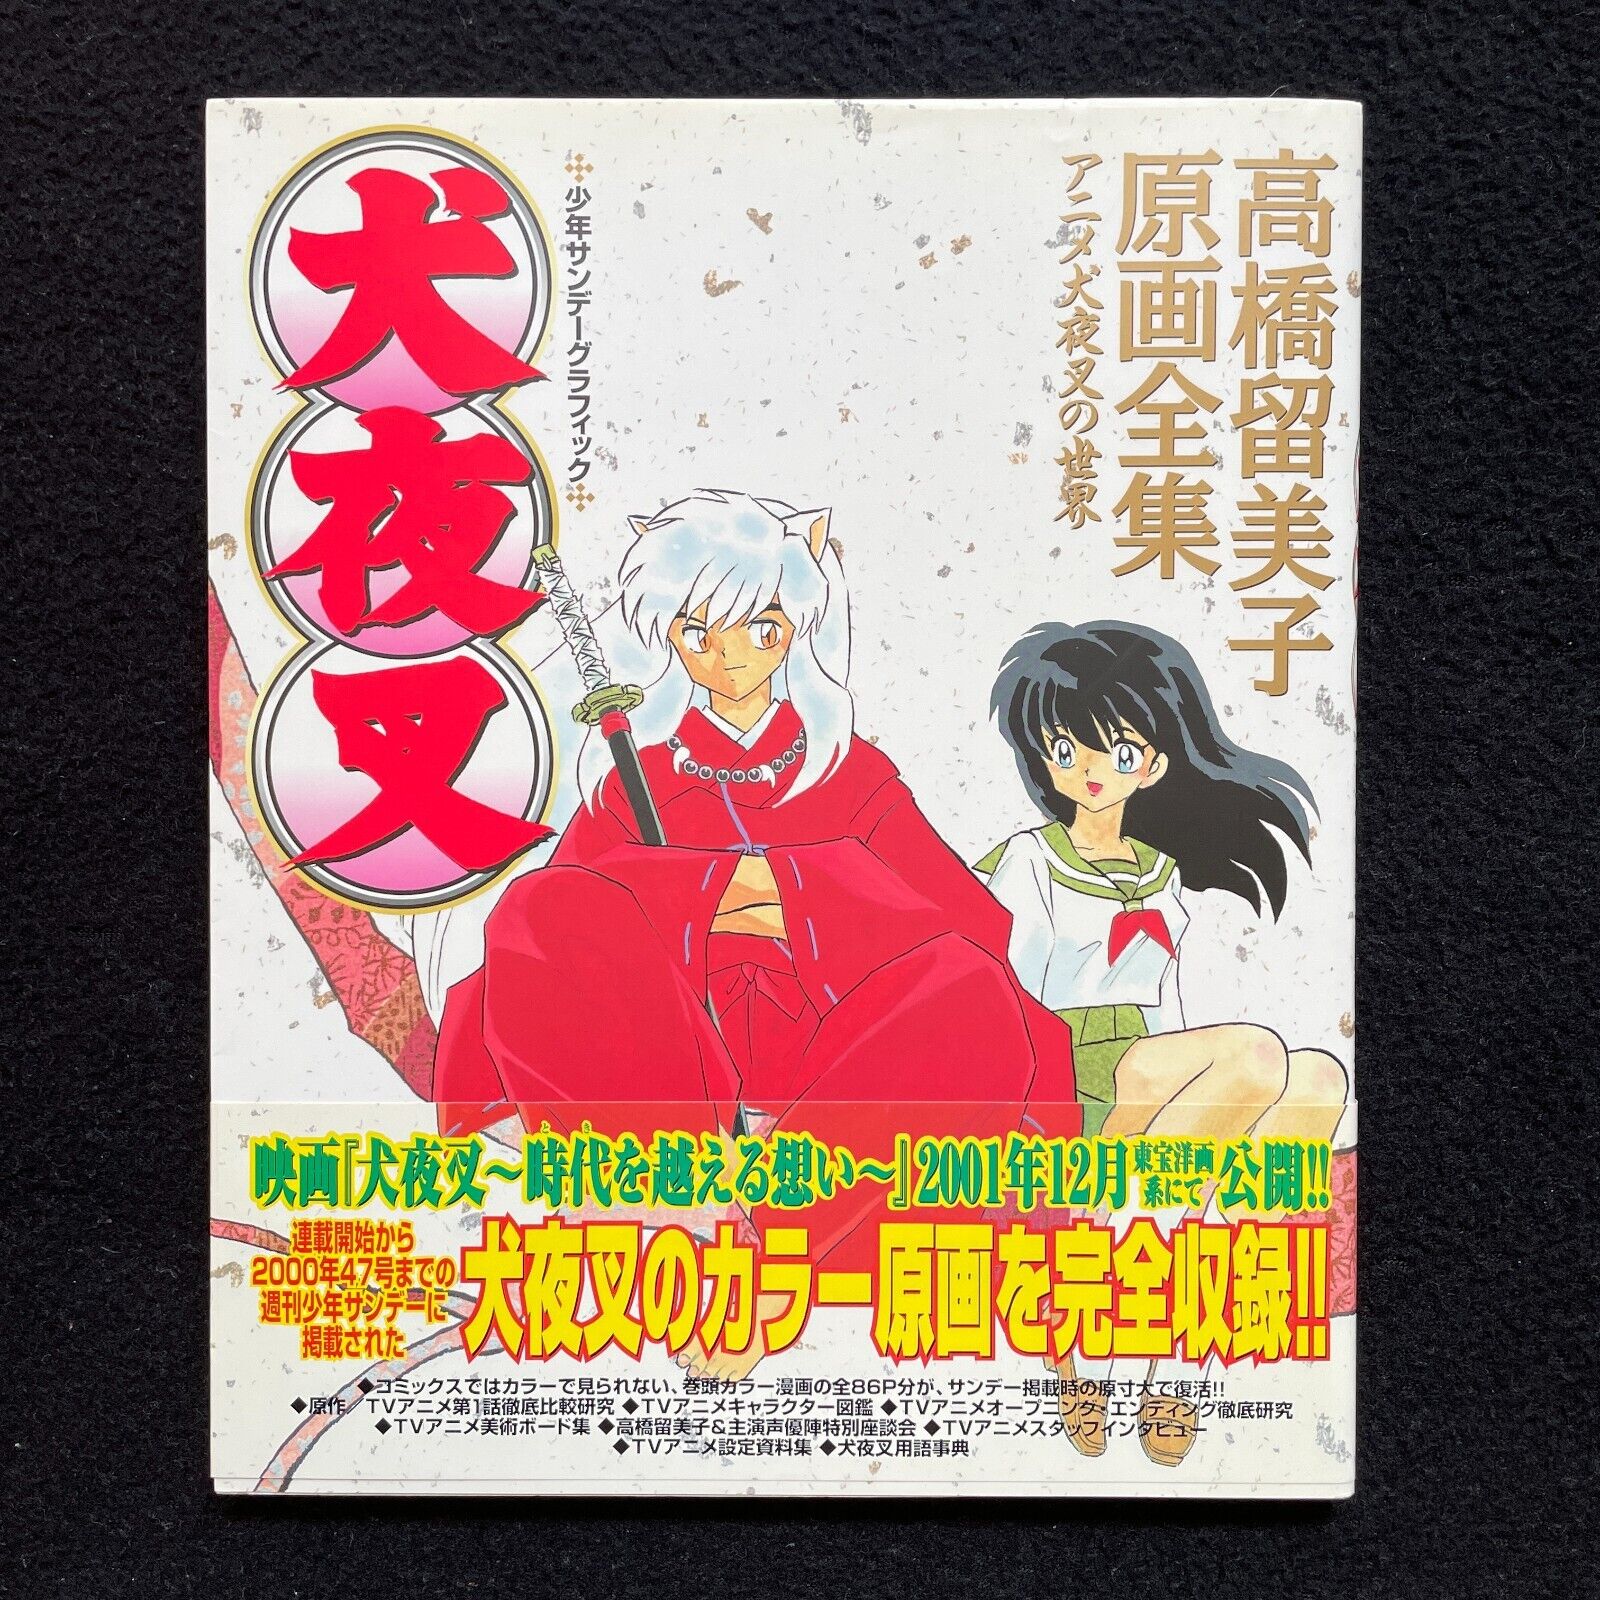 InuYasha Rumiko Takahashi Genga Zenshuu Art Guide Book From Japan with Obi